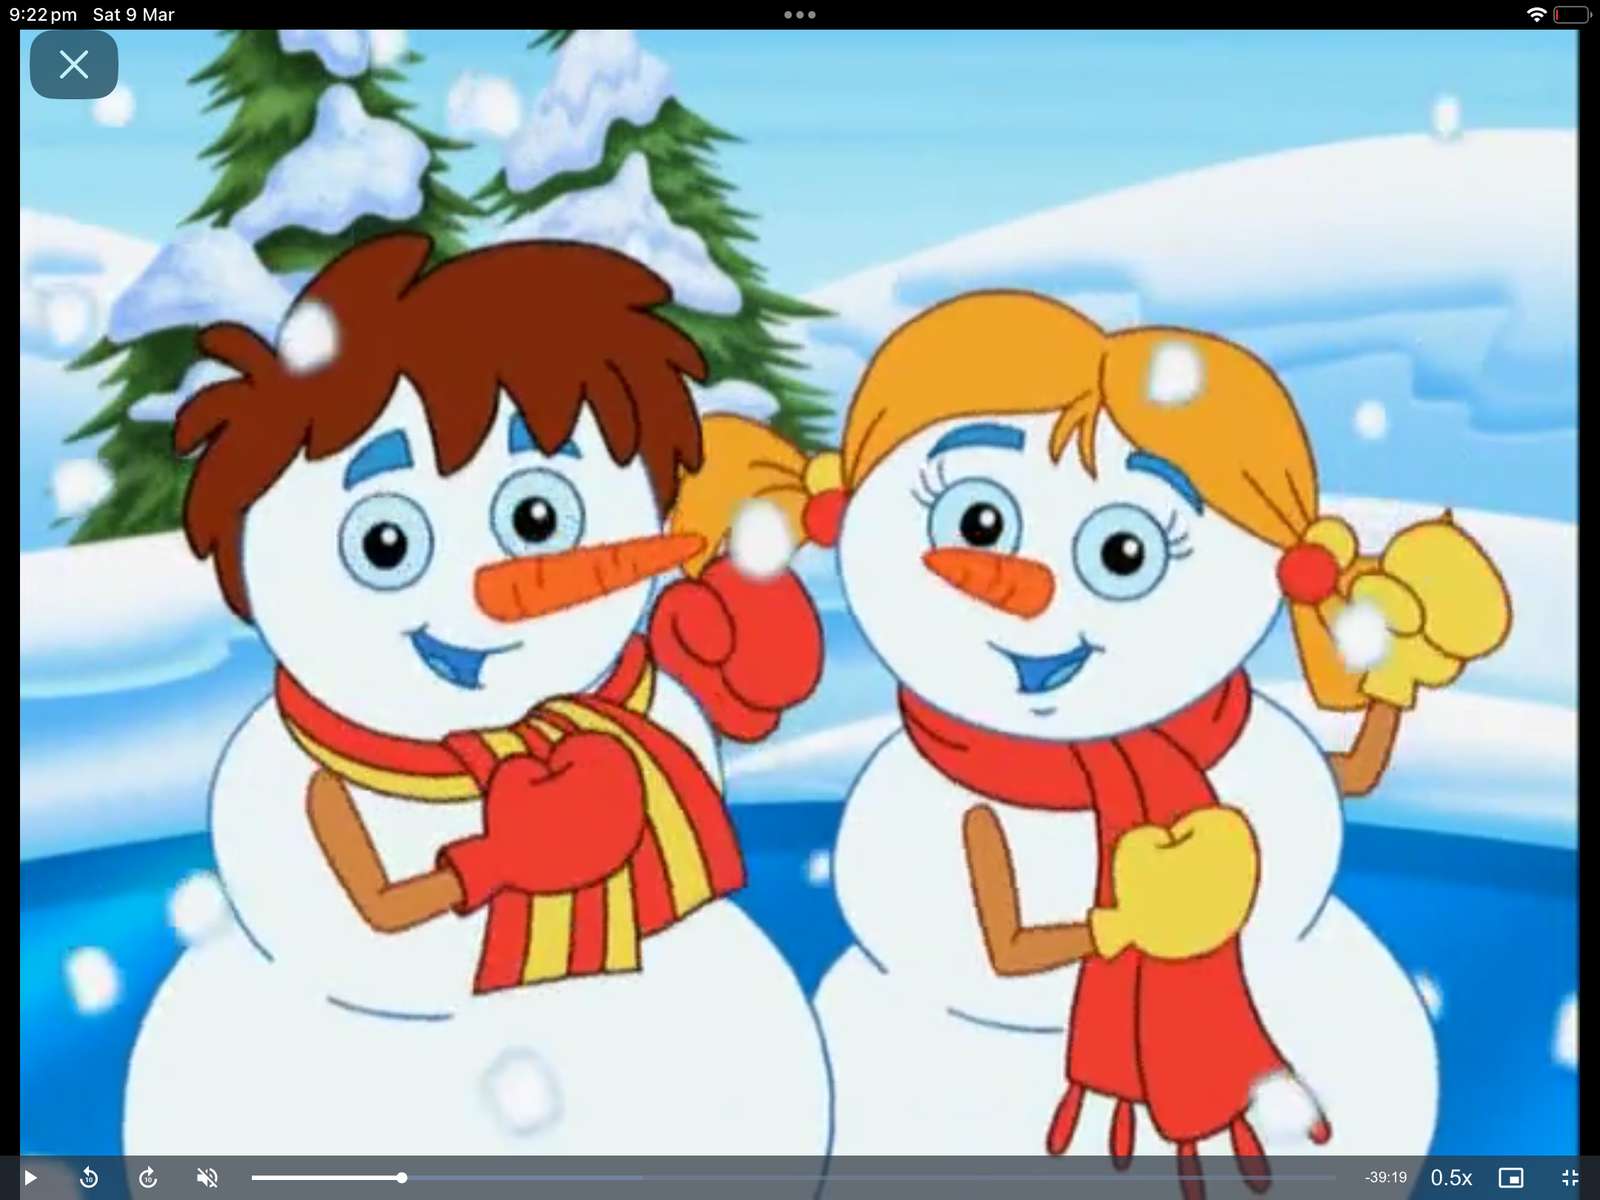 Dora de ontdekkingsreiziger Dora redt de sneeuwprinses online puzzel